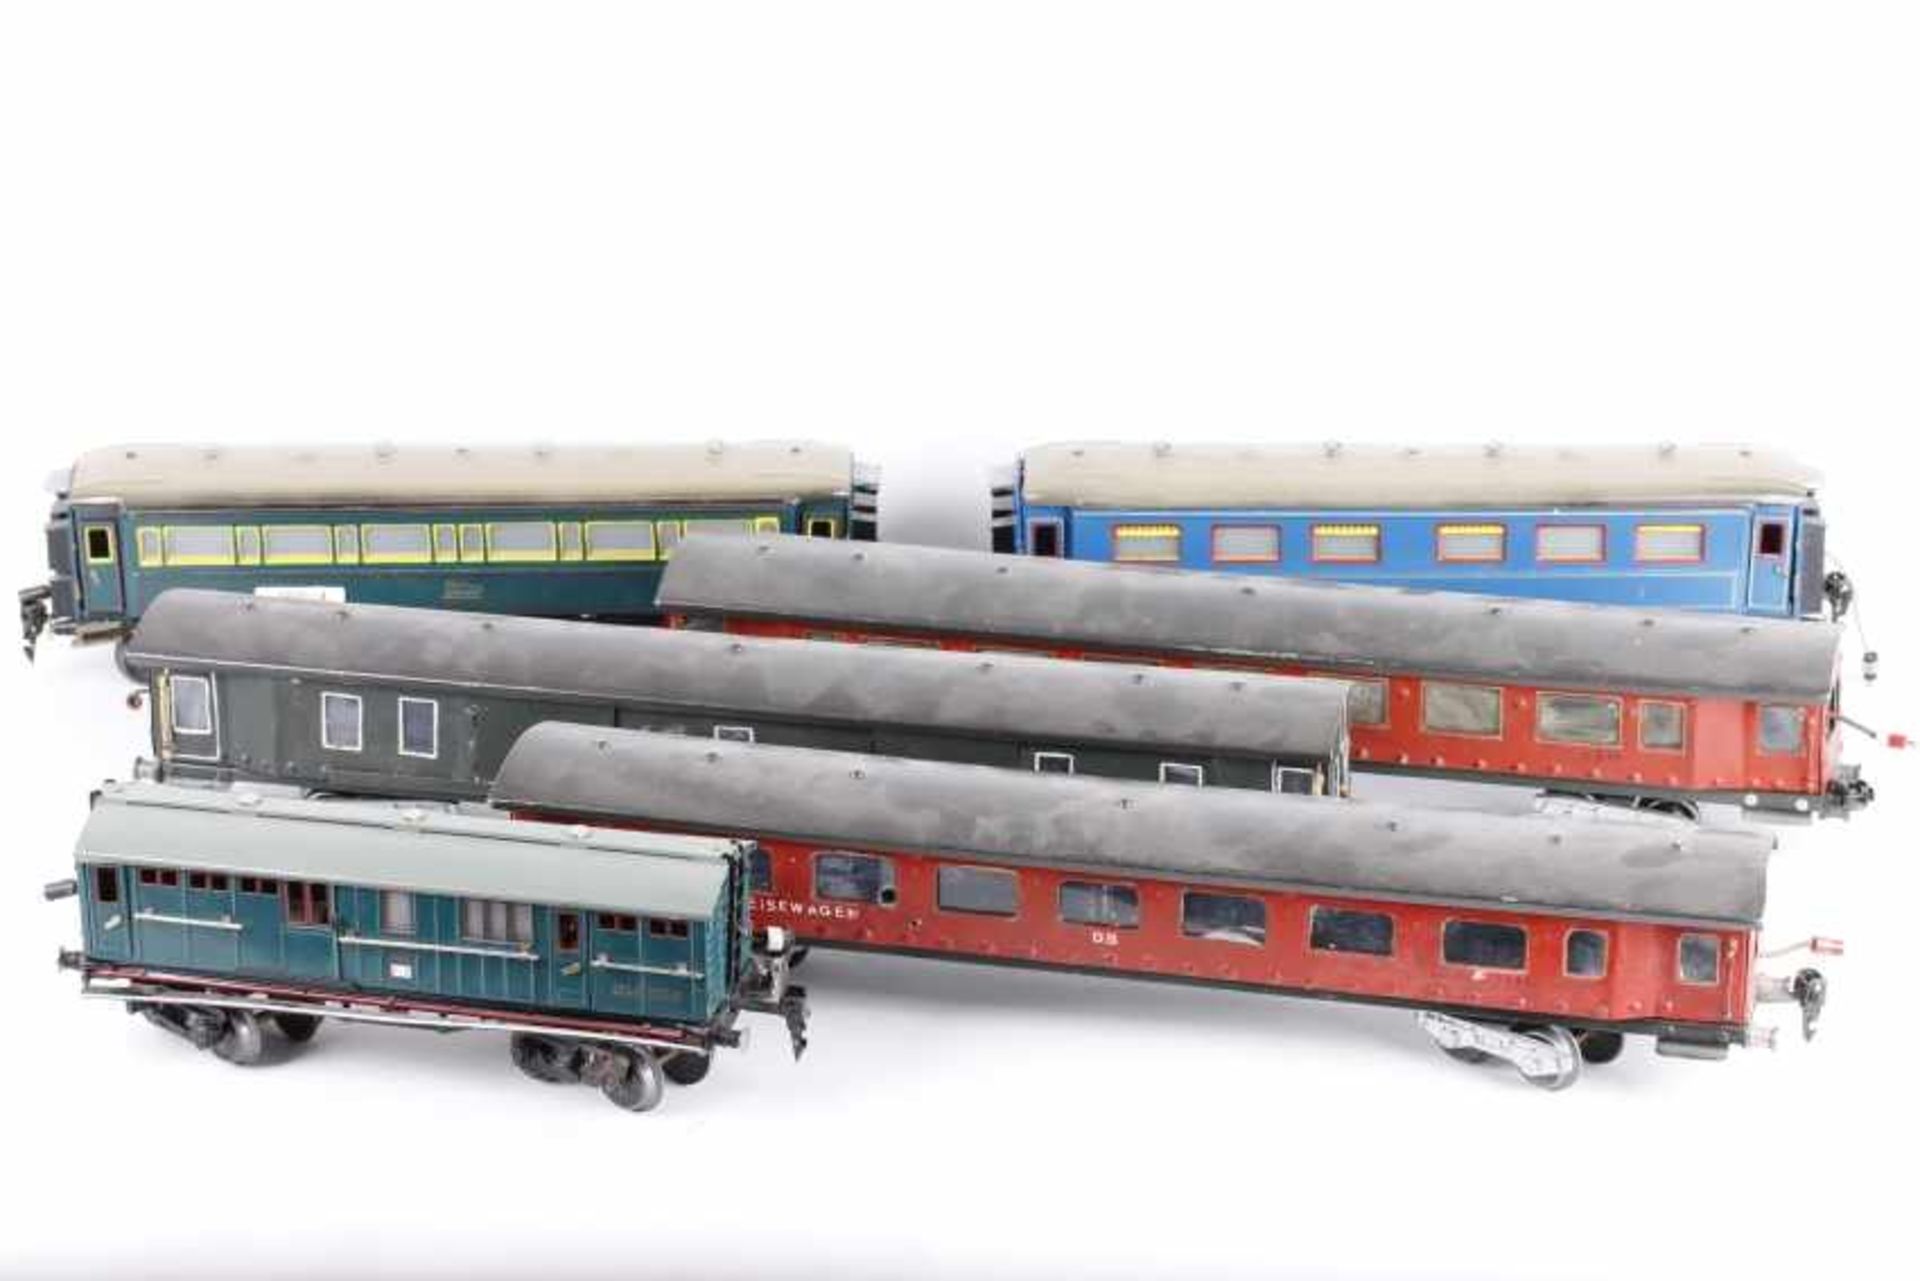 Sechs SchnellzugwagenSechs Schnellzugwagen, 3 x Paya 26 cm bzw. 35 cm lang, Gussteile rissig oder